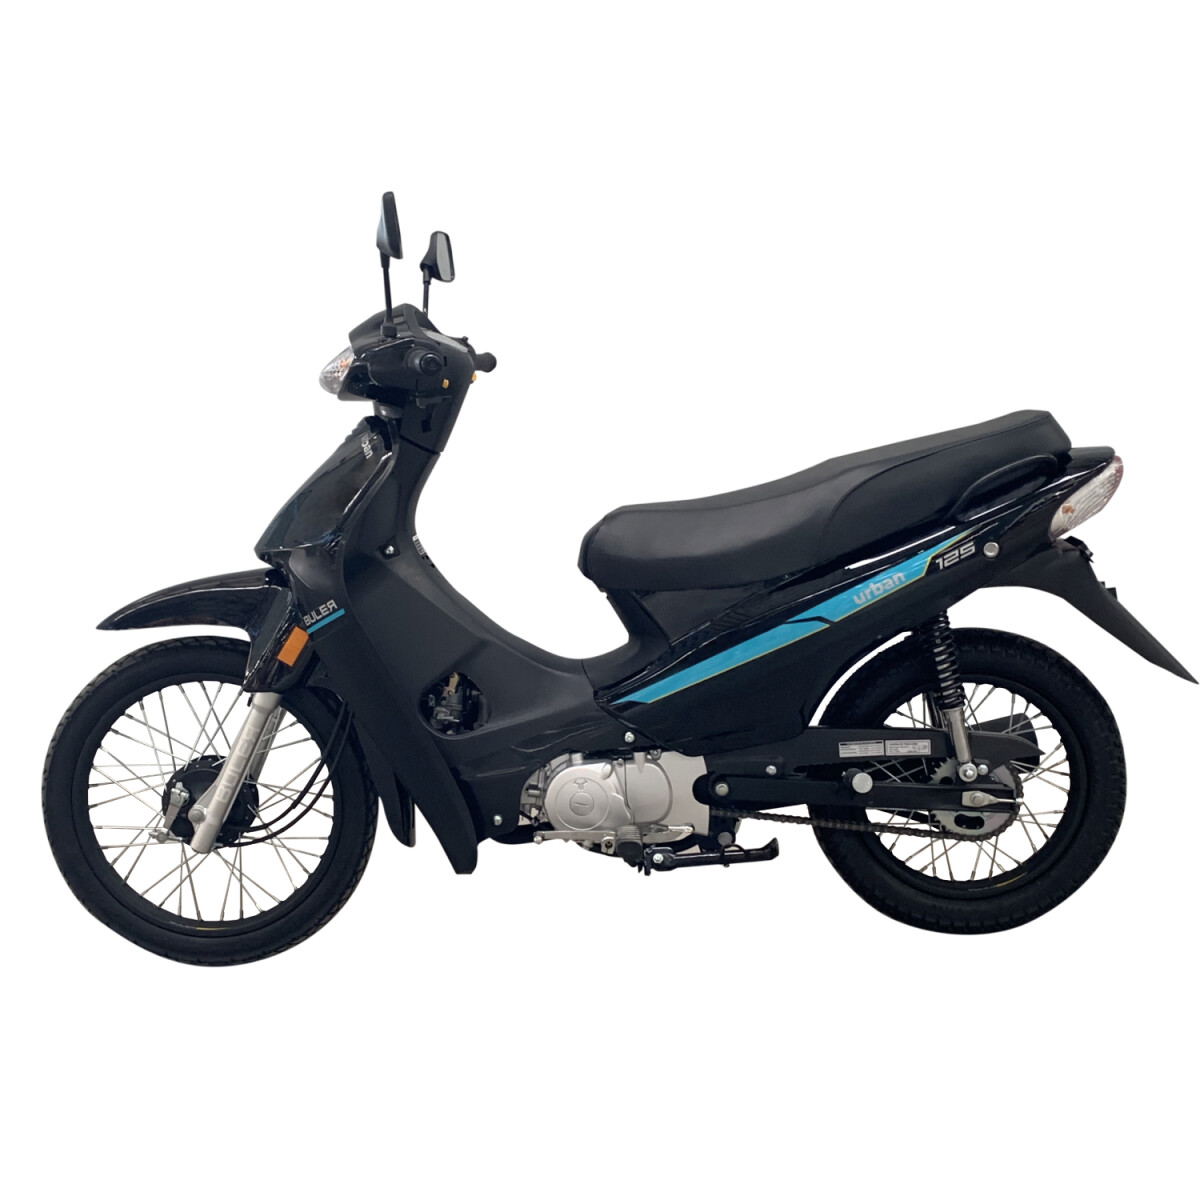 Motocicleta Buler Urban 125cc - Rayos - Negro 